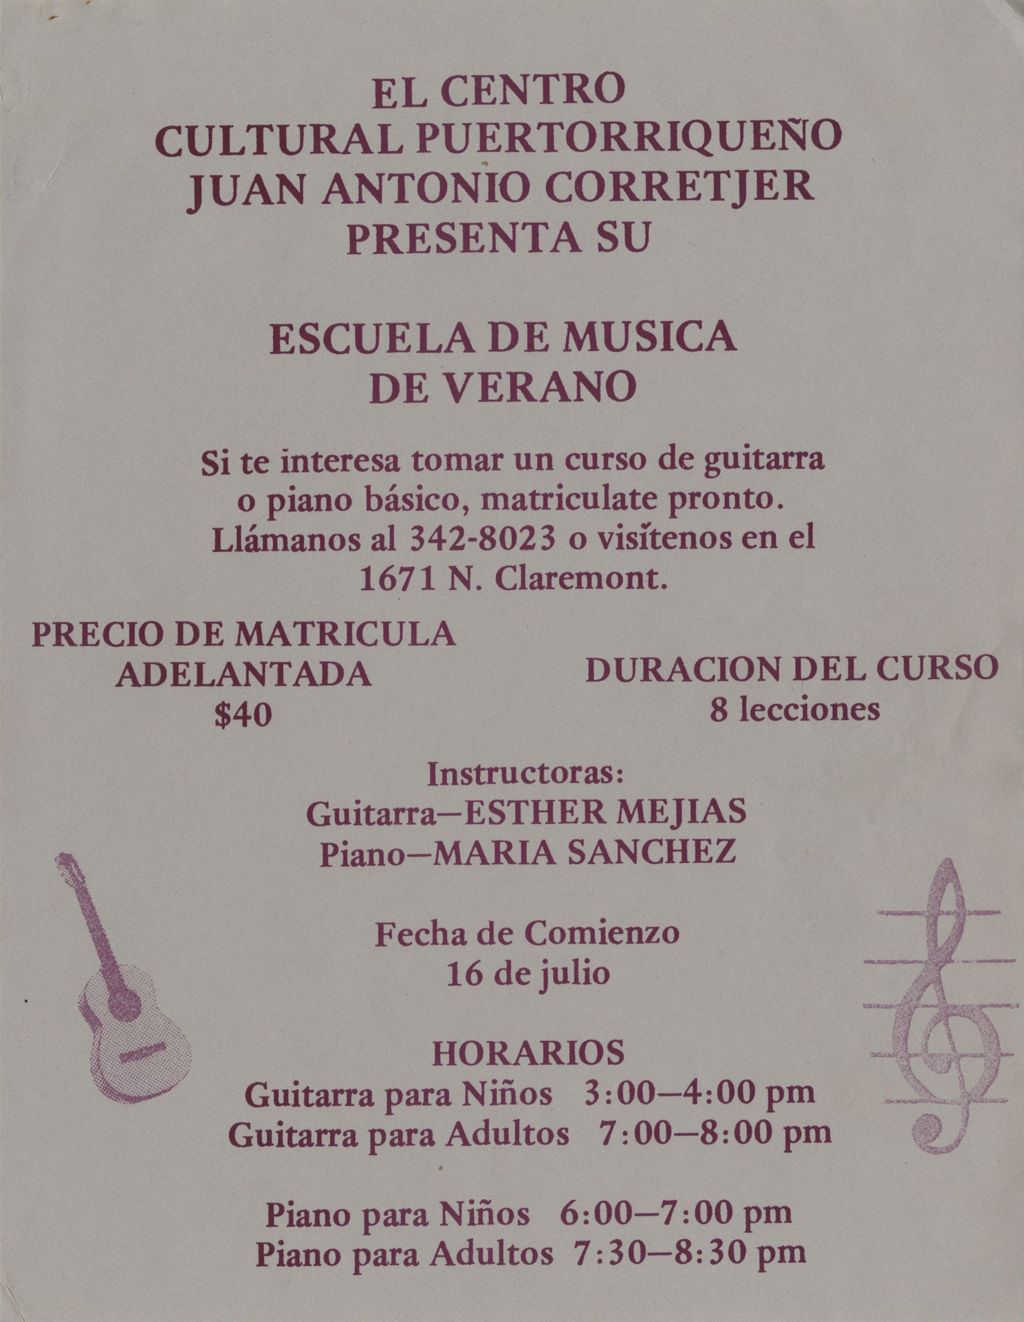 Miniature of Escuela de Musica de Verano